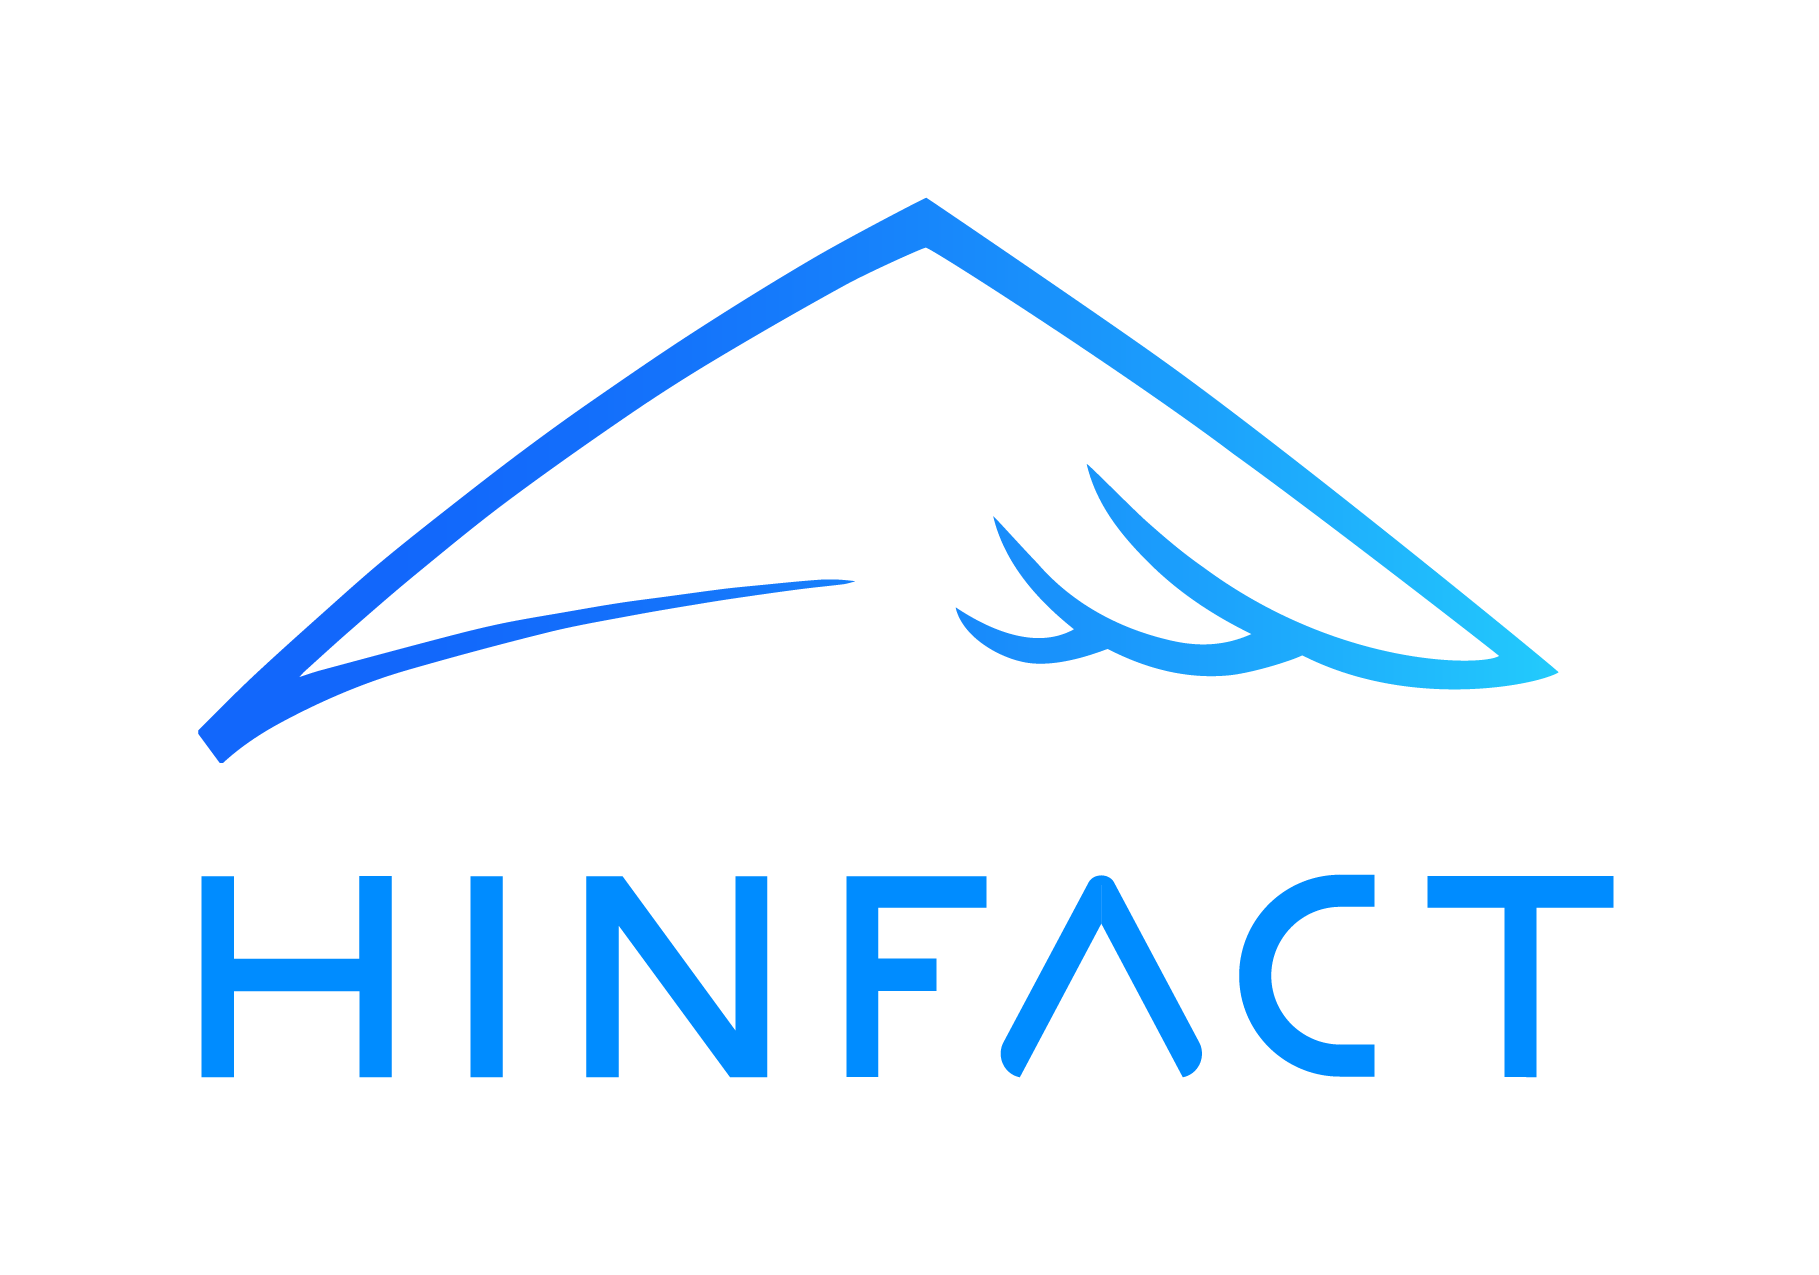 Hinfact